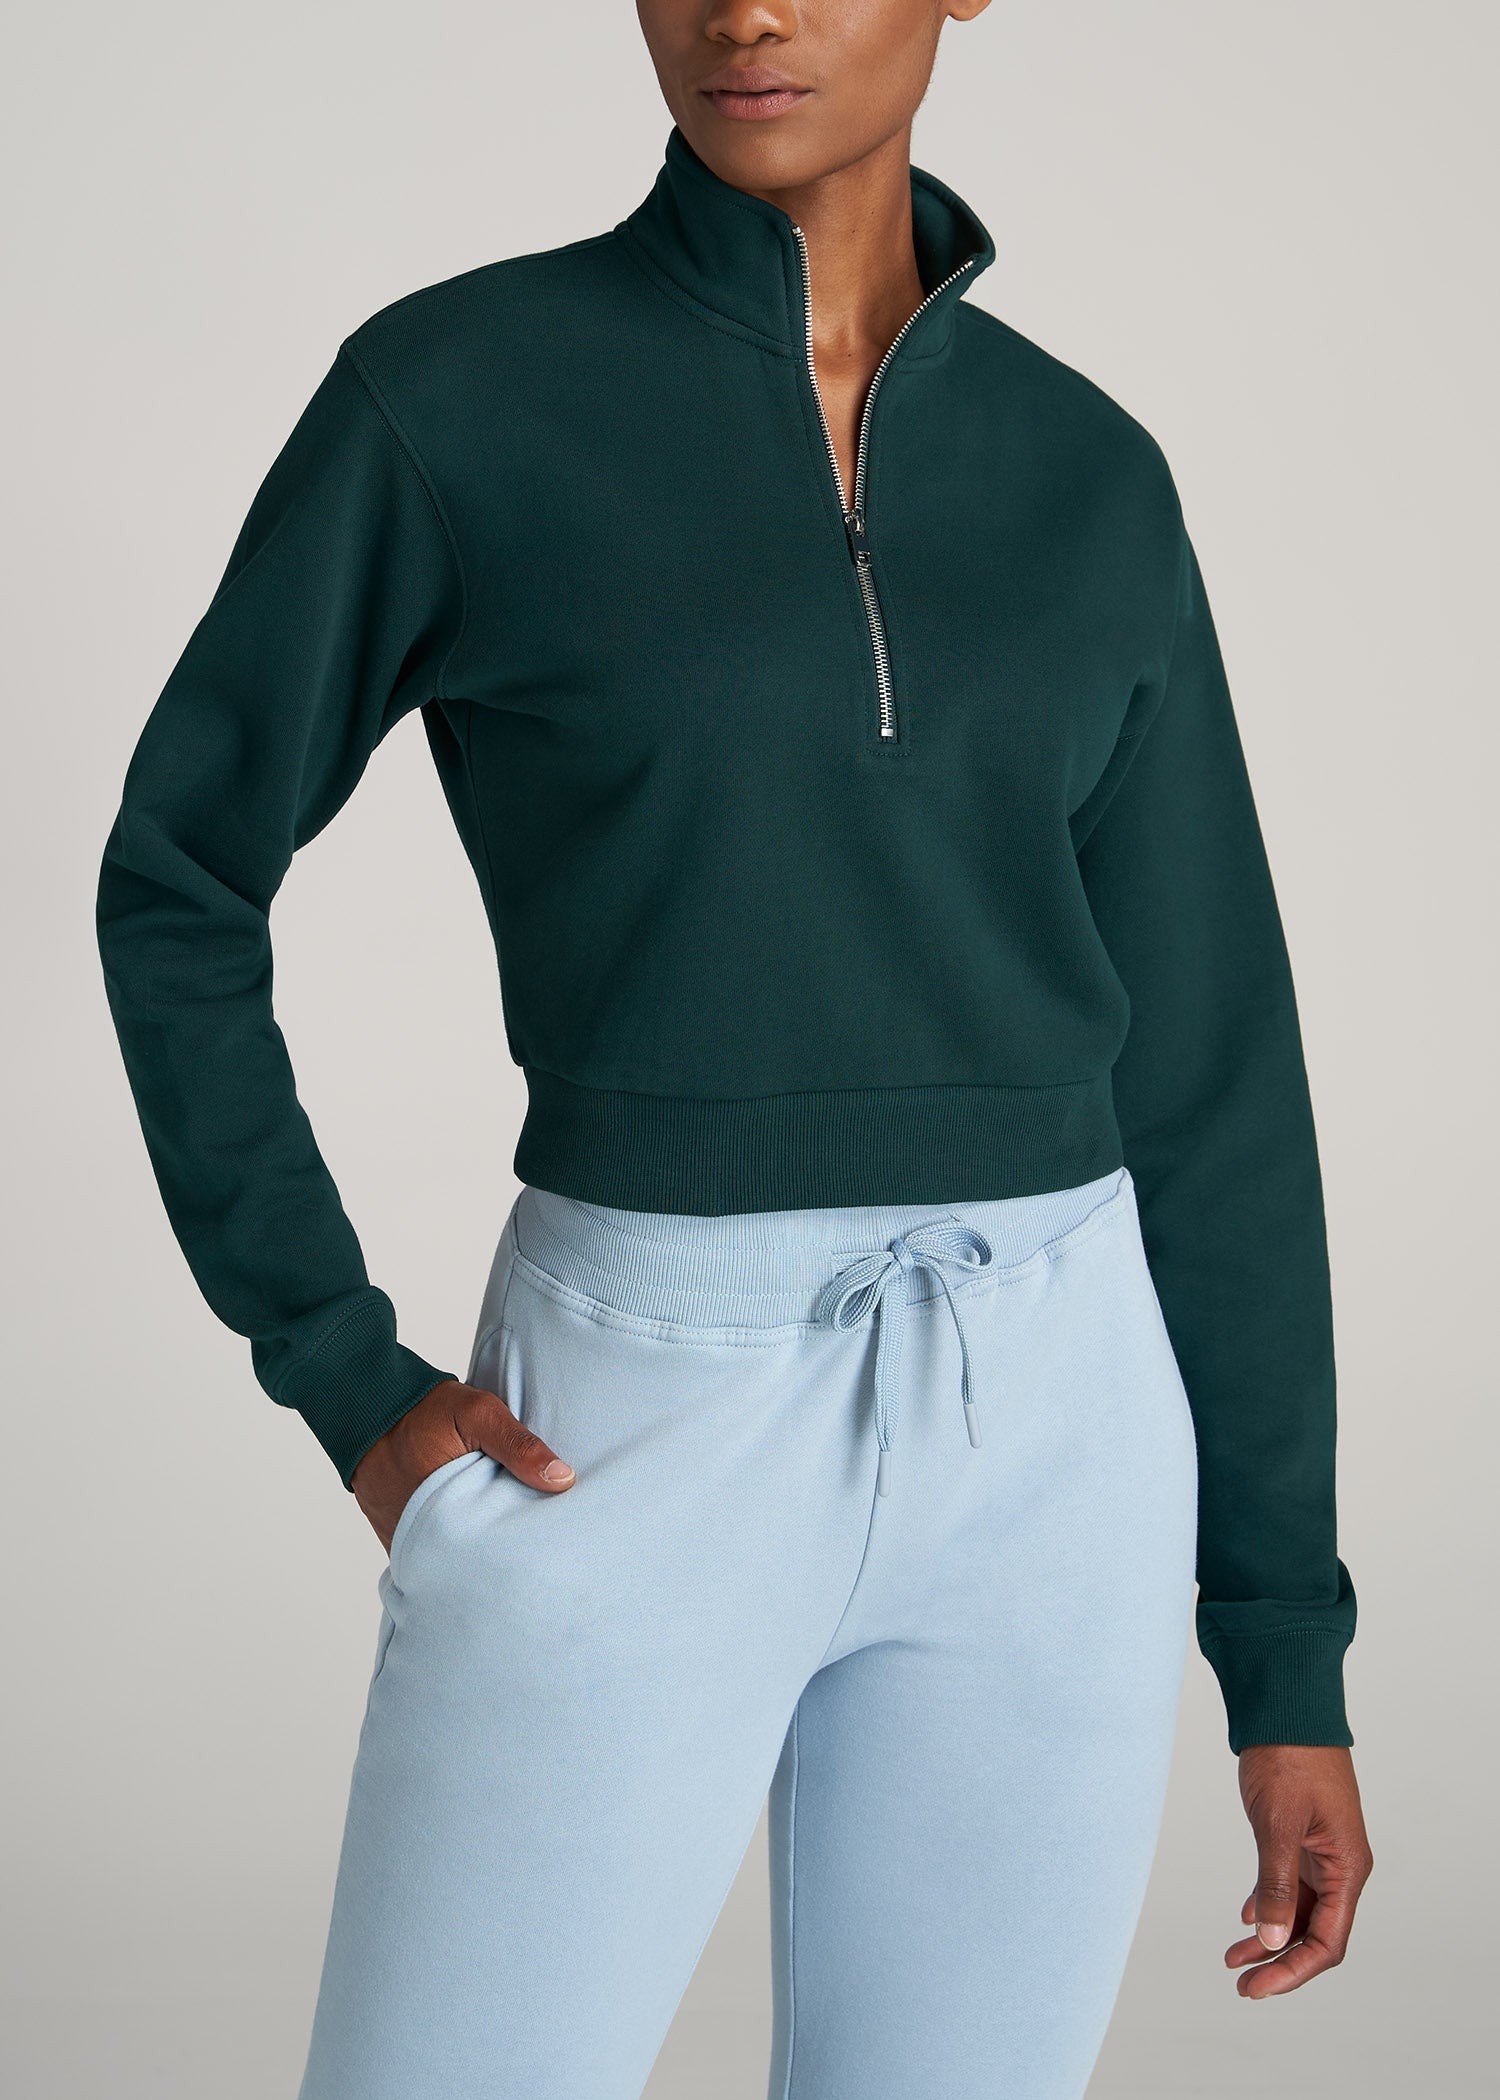 Wearever Cropped Half-Zip Women\'s Tall Sweatshirt | American Tall